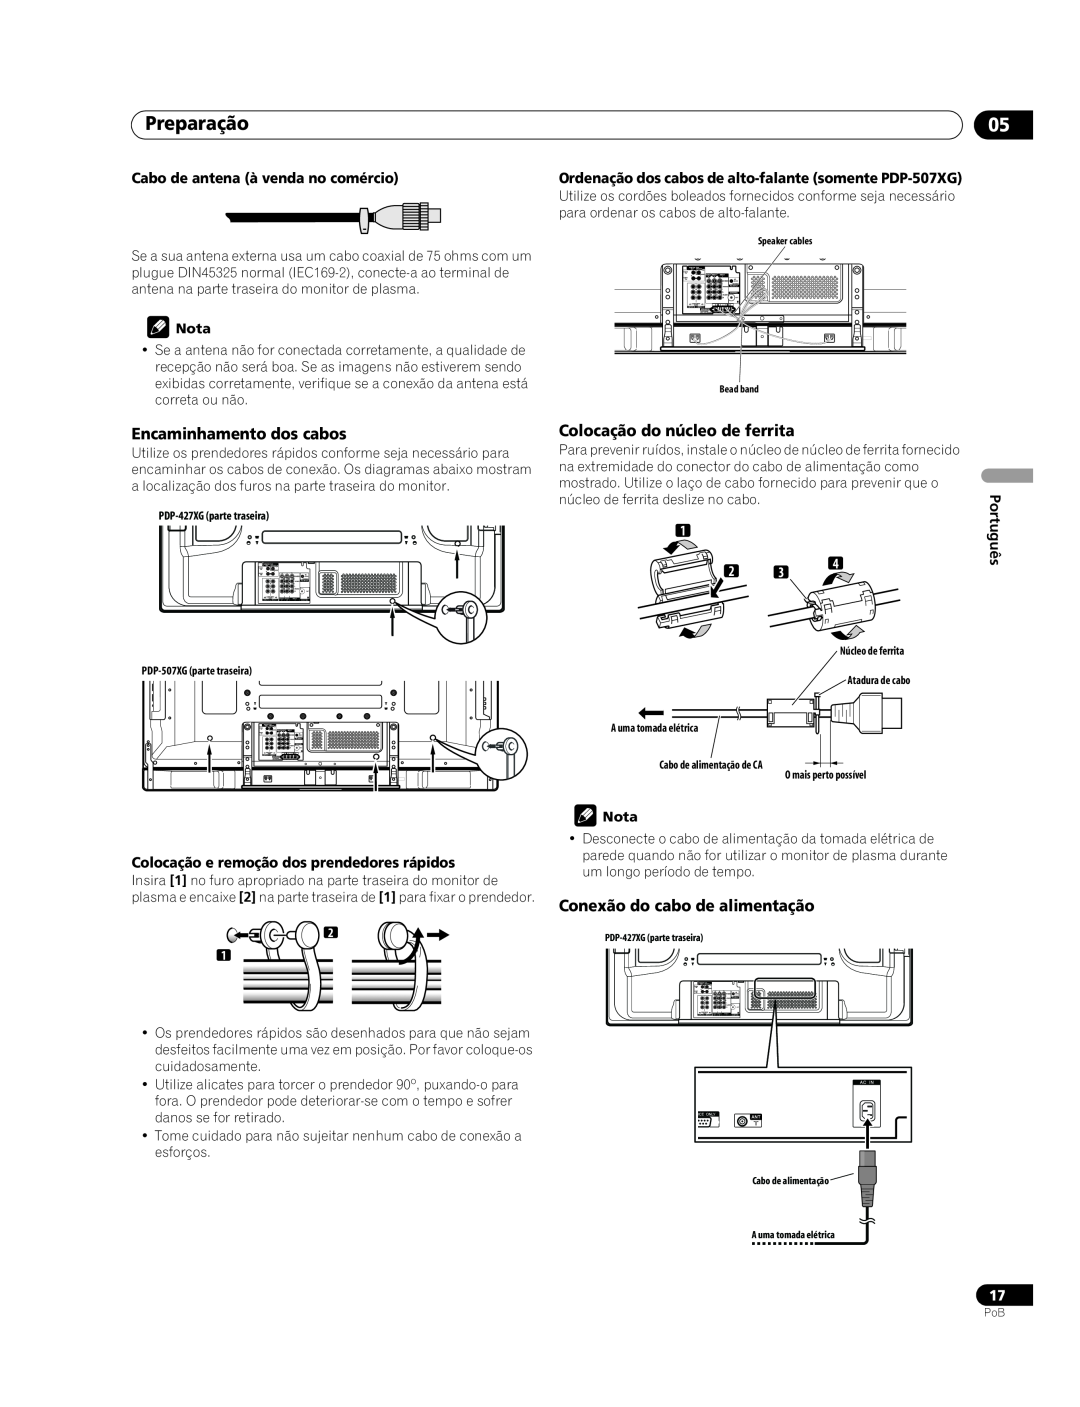 Pioneer PDP-507XG Preparação, Encaminhamento dos cabos, Colocação do núcleo de ferrita, Conexão do cabo de alimentação 